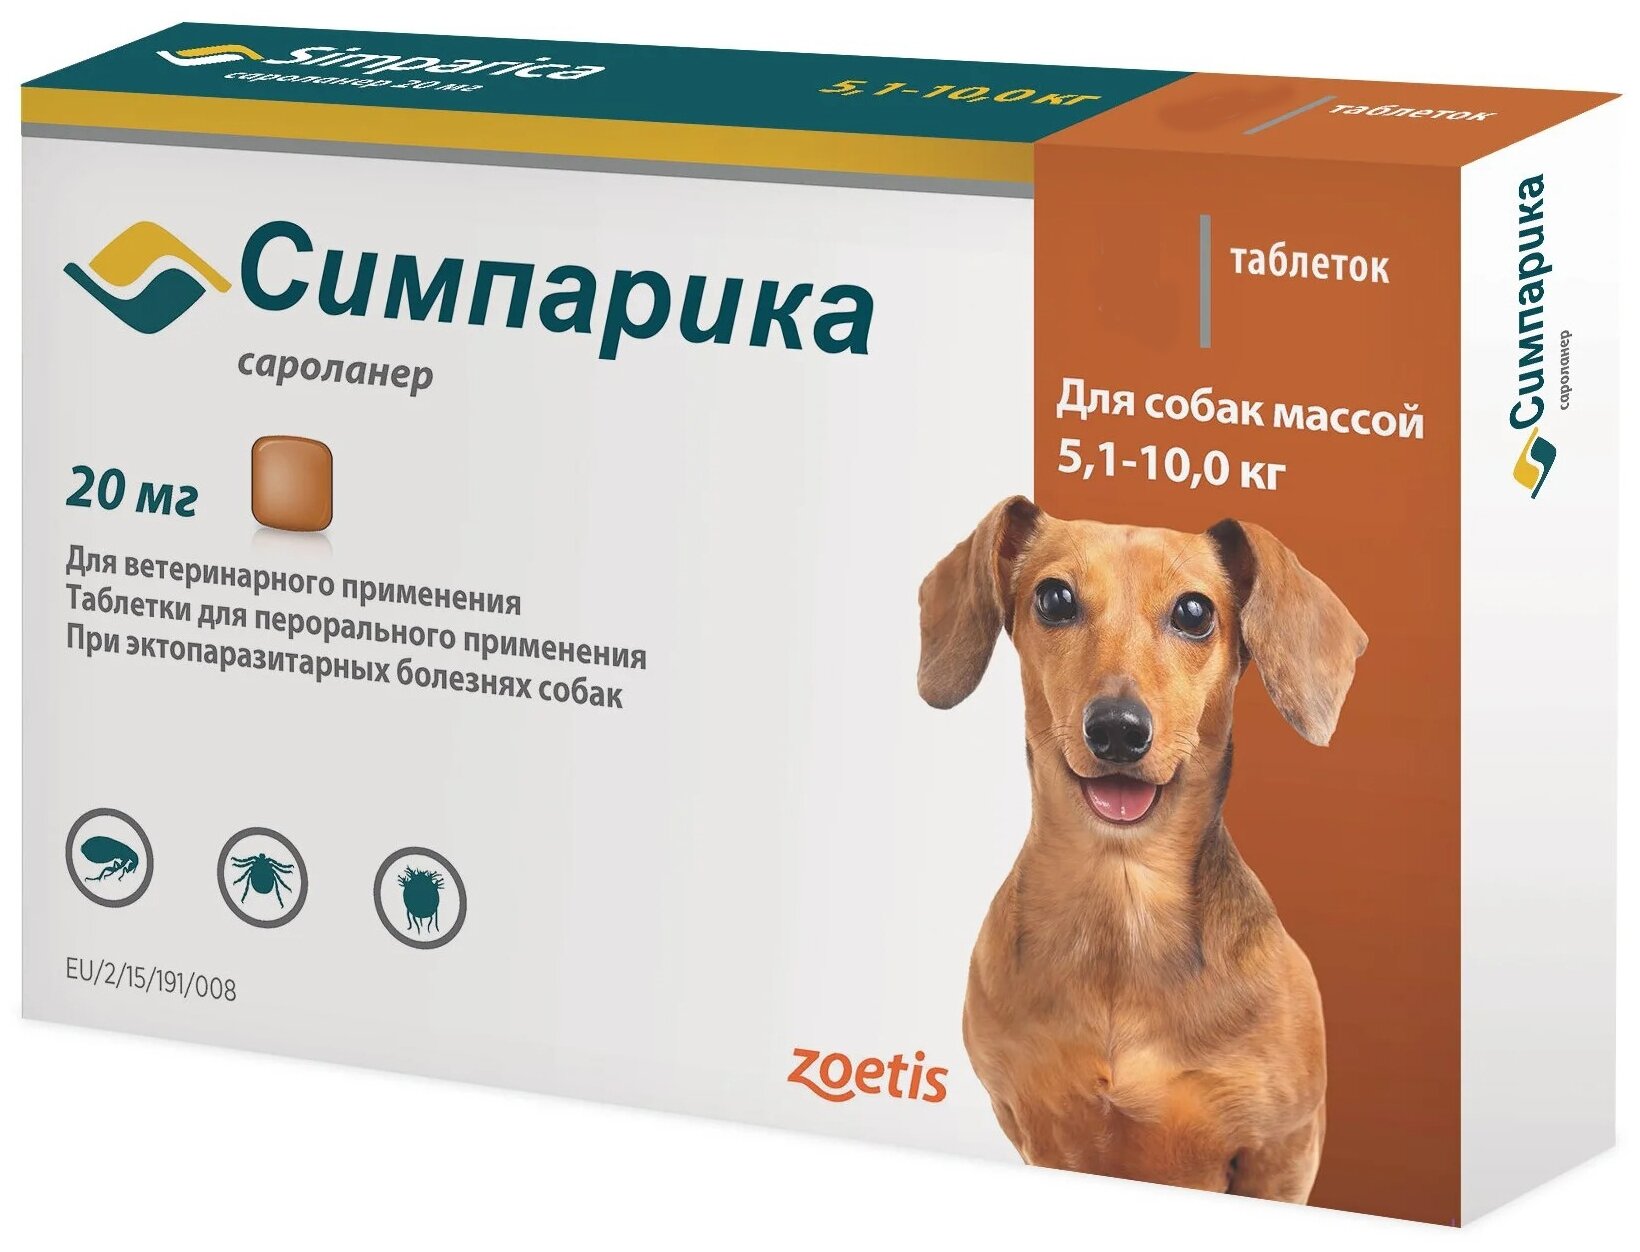 Zoetis таблетки от блох и клещей Симпарика 20 мг для собак 51-10 кг для щенков и собак